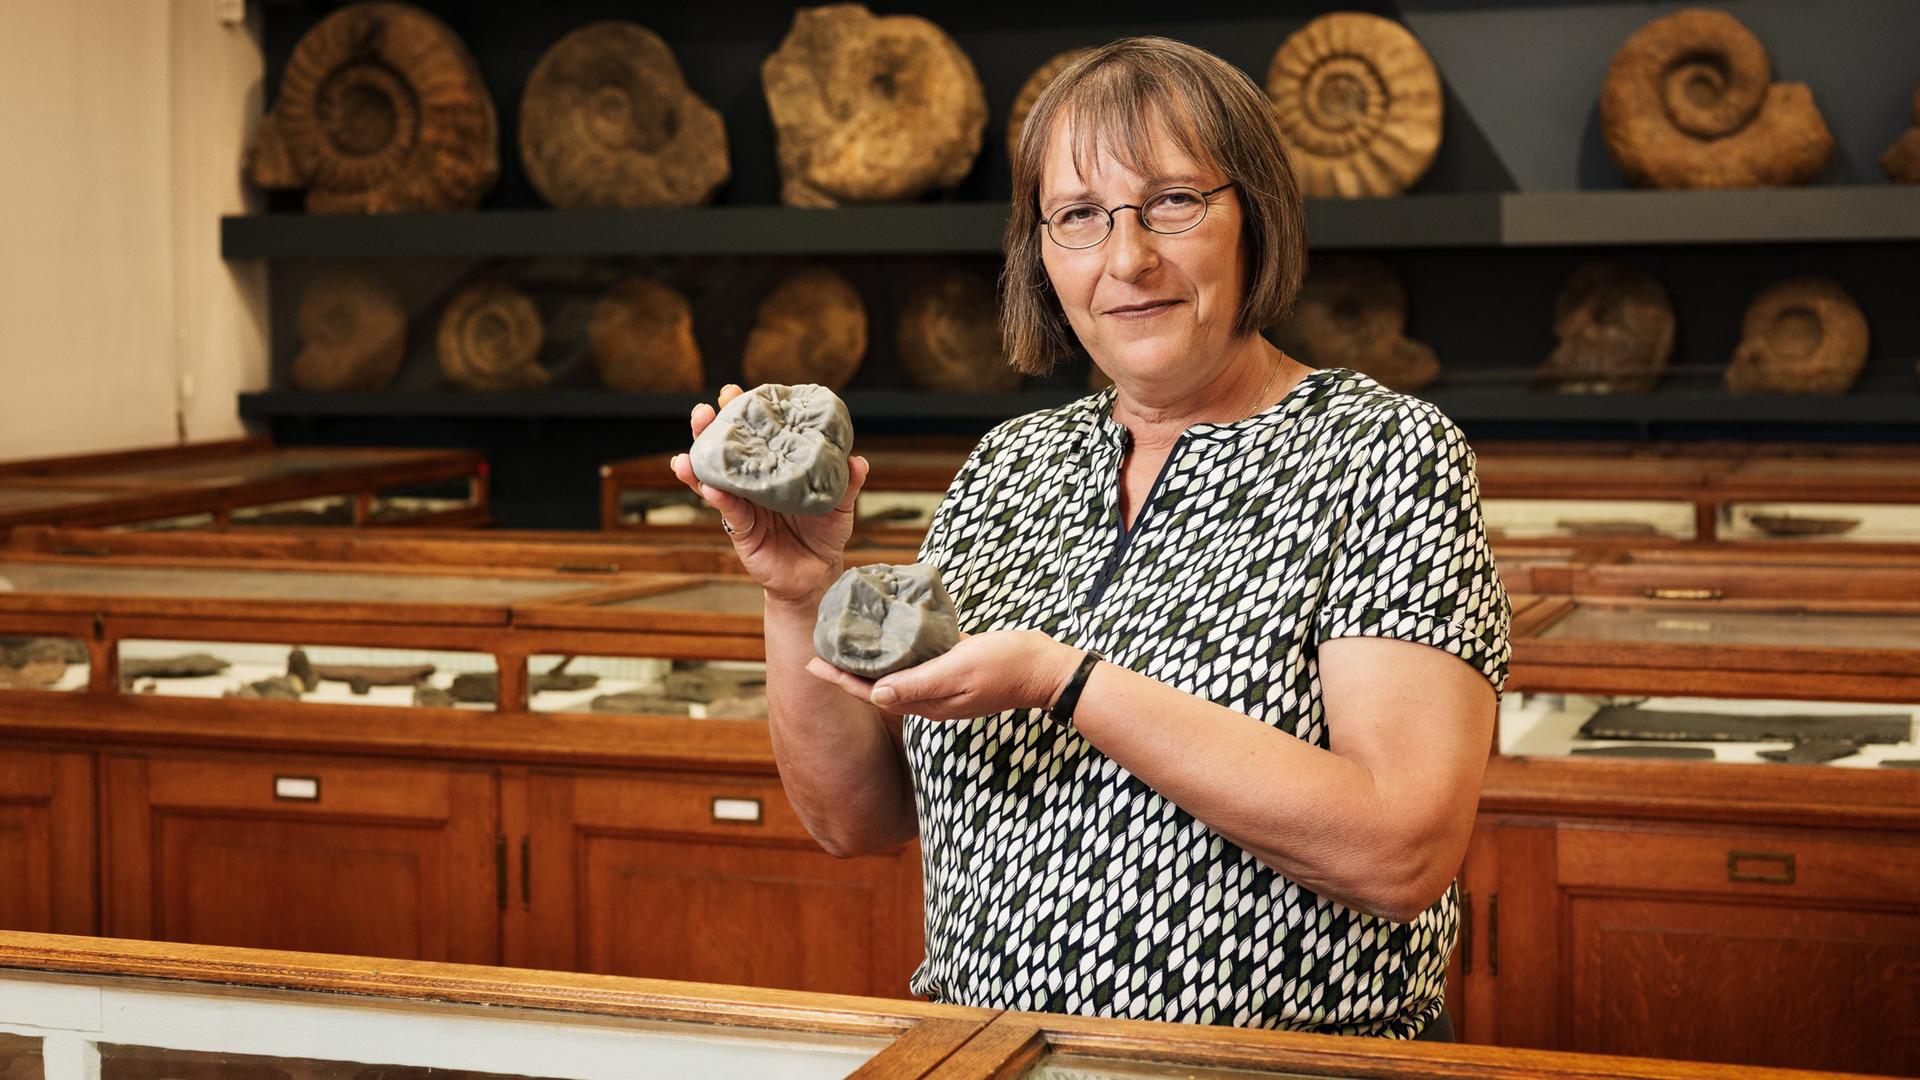 Die Paläontologin Madelaine Böhme steht vor einem Regal mit Fossilien. Sie hält vergrößerte 3D-Modelle von Backenzähnen von Menschenaffen.